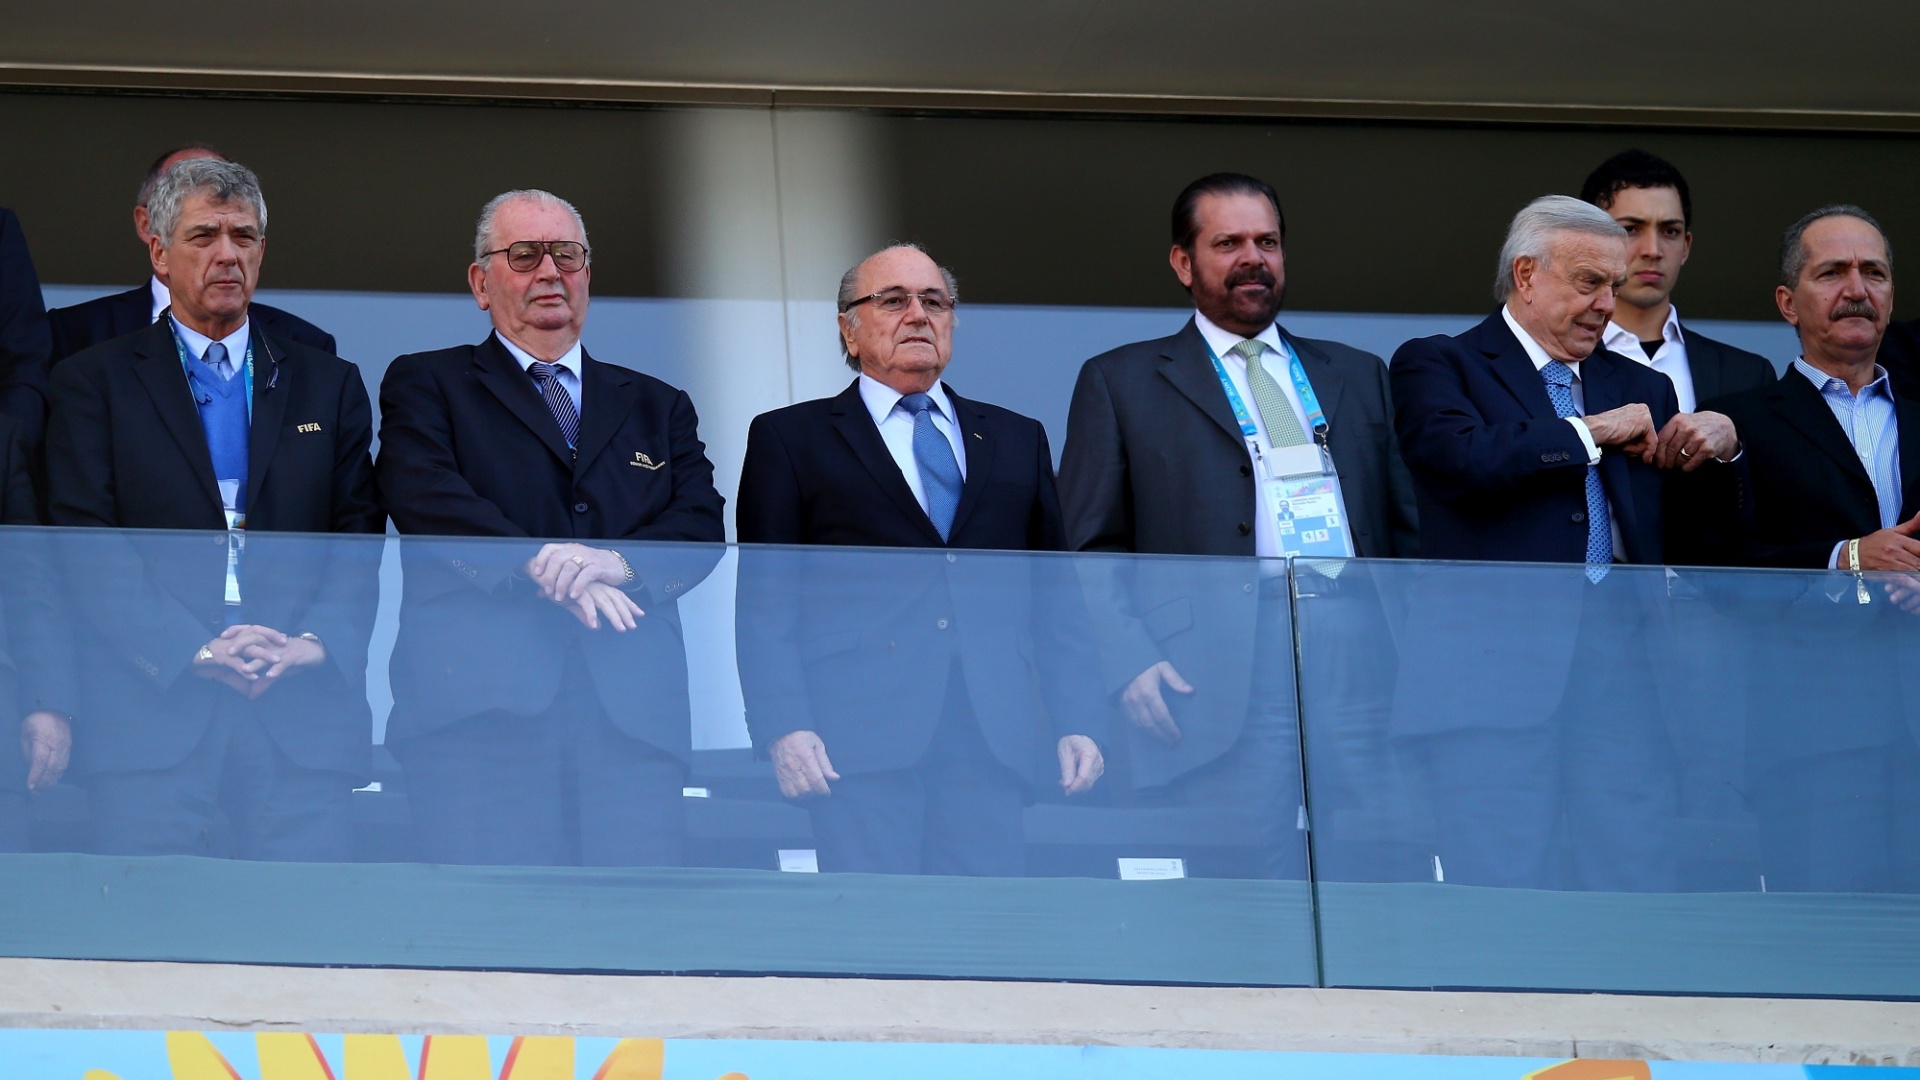 01.jul.2014 - Presidente da Fifa, Joseph Blatter (terceiro da esquerda para a direita) vai ao Itaquerão ver a partida entre Argentina e Suíça